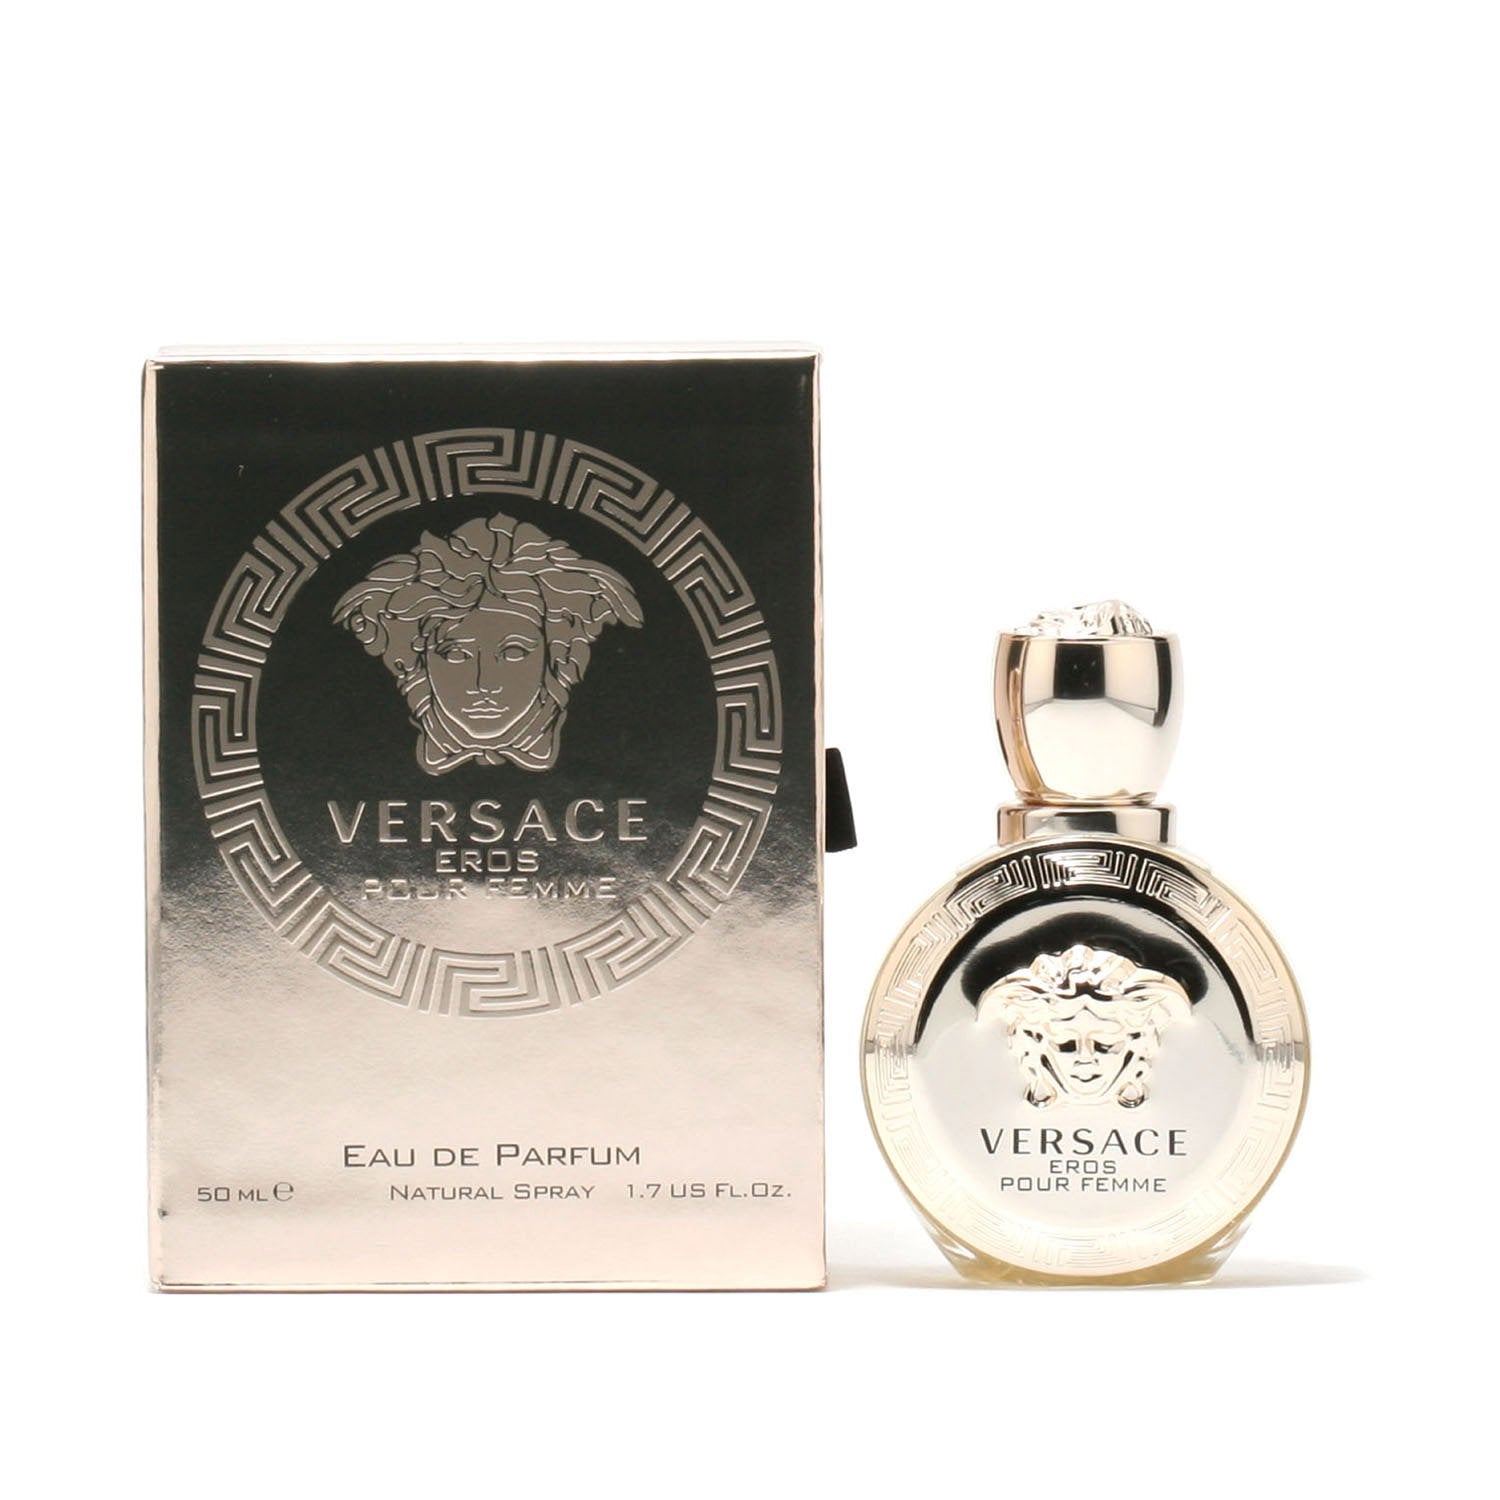 Versace Versace Eros by Versace - Gift Set - The Best of Versace